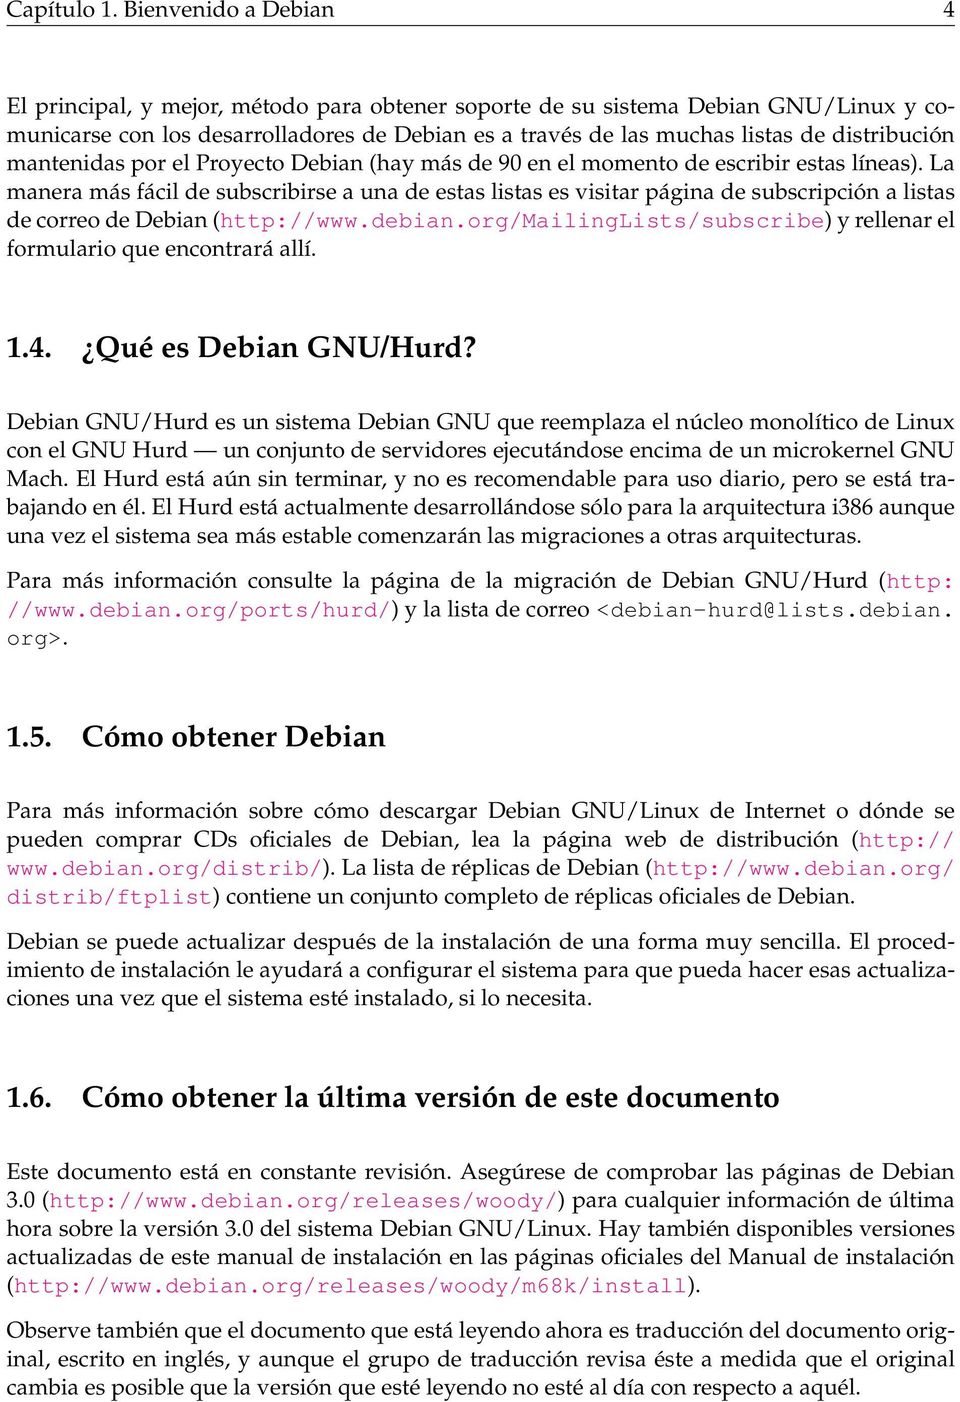 distribución mantenidas por el Proyecto Debian (hay más de 90 en el momento de escribir estas líneas).